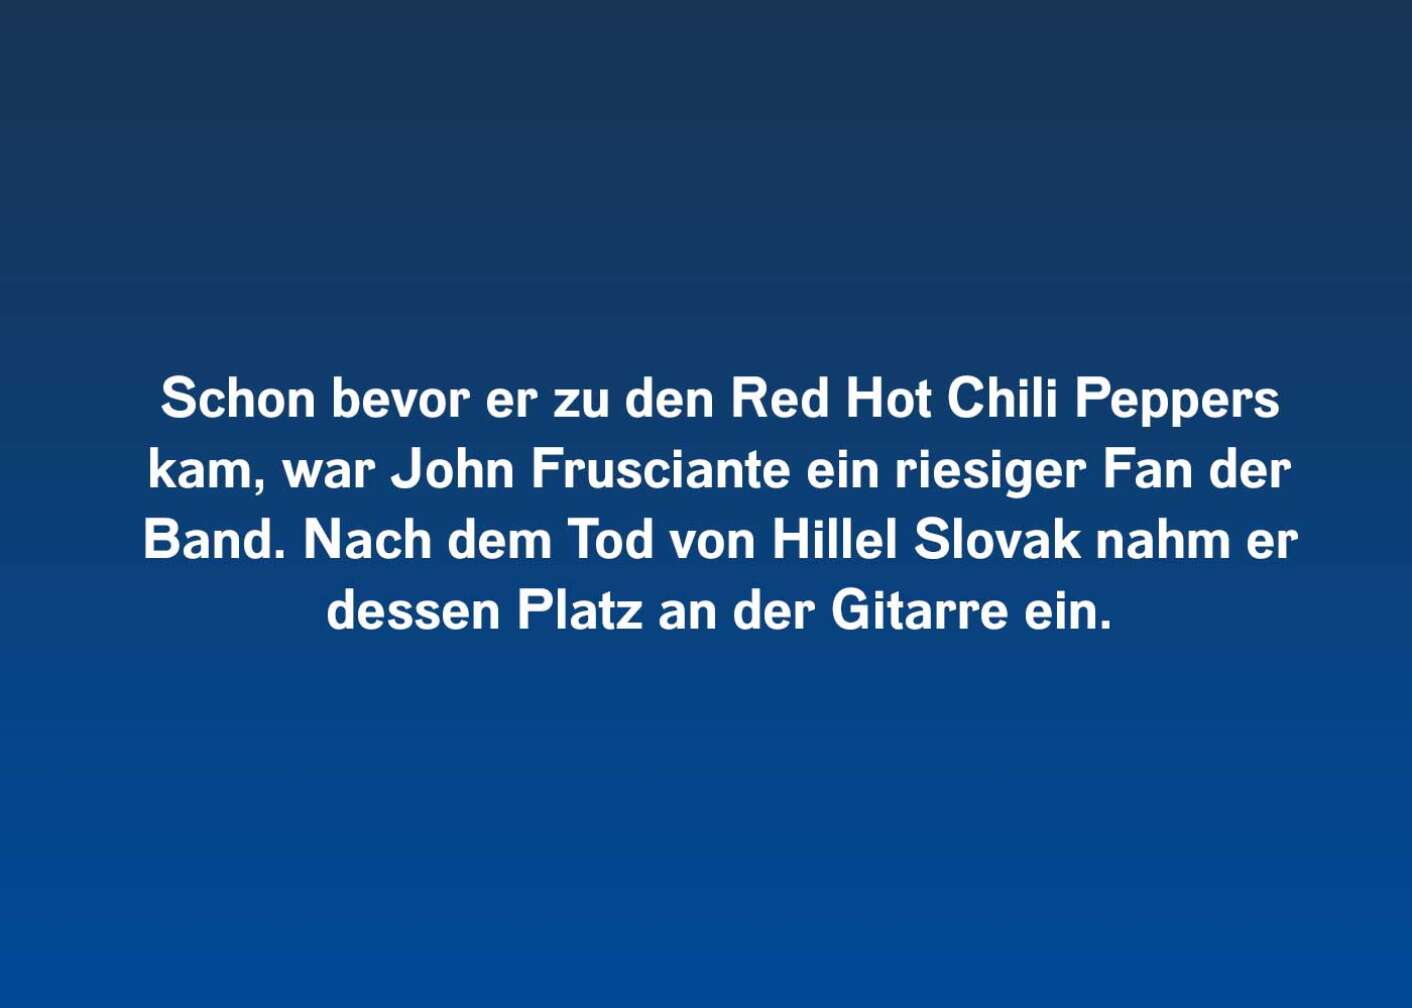 10 Fakten über die Red Hot Chili Peppers (bevor er zu den)